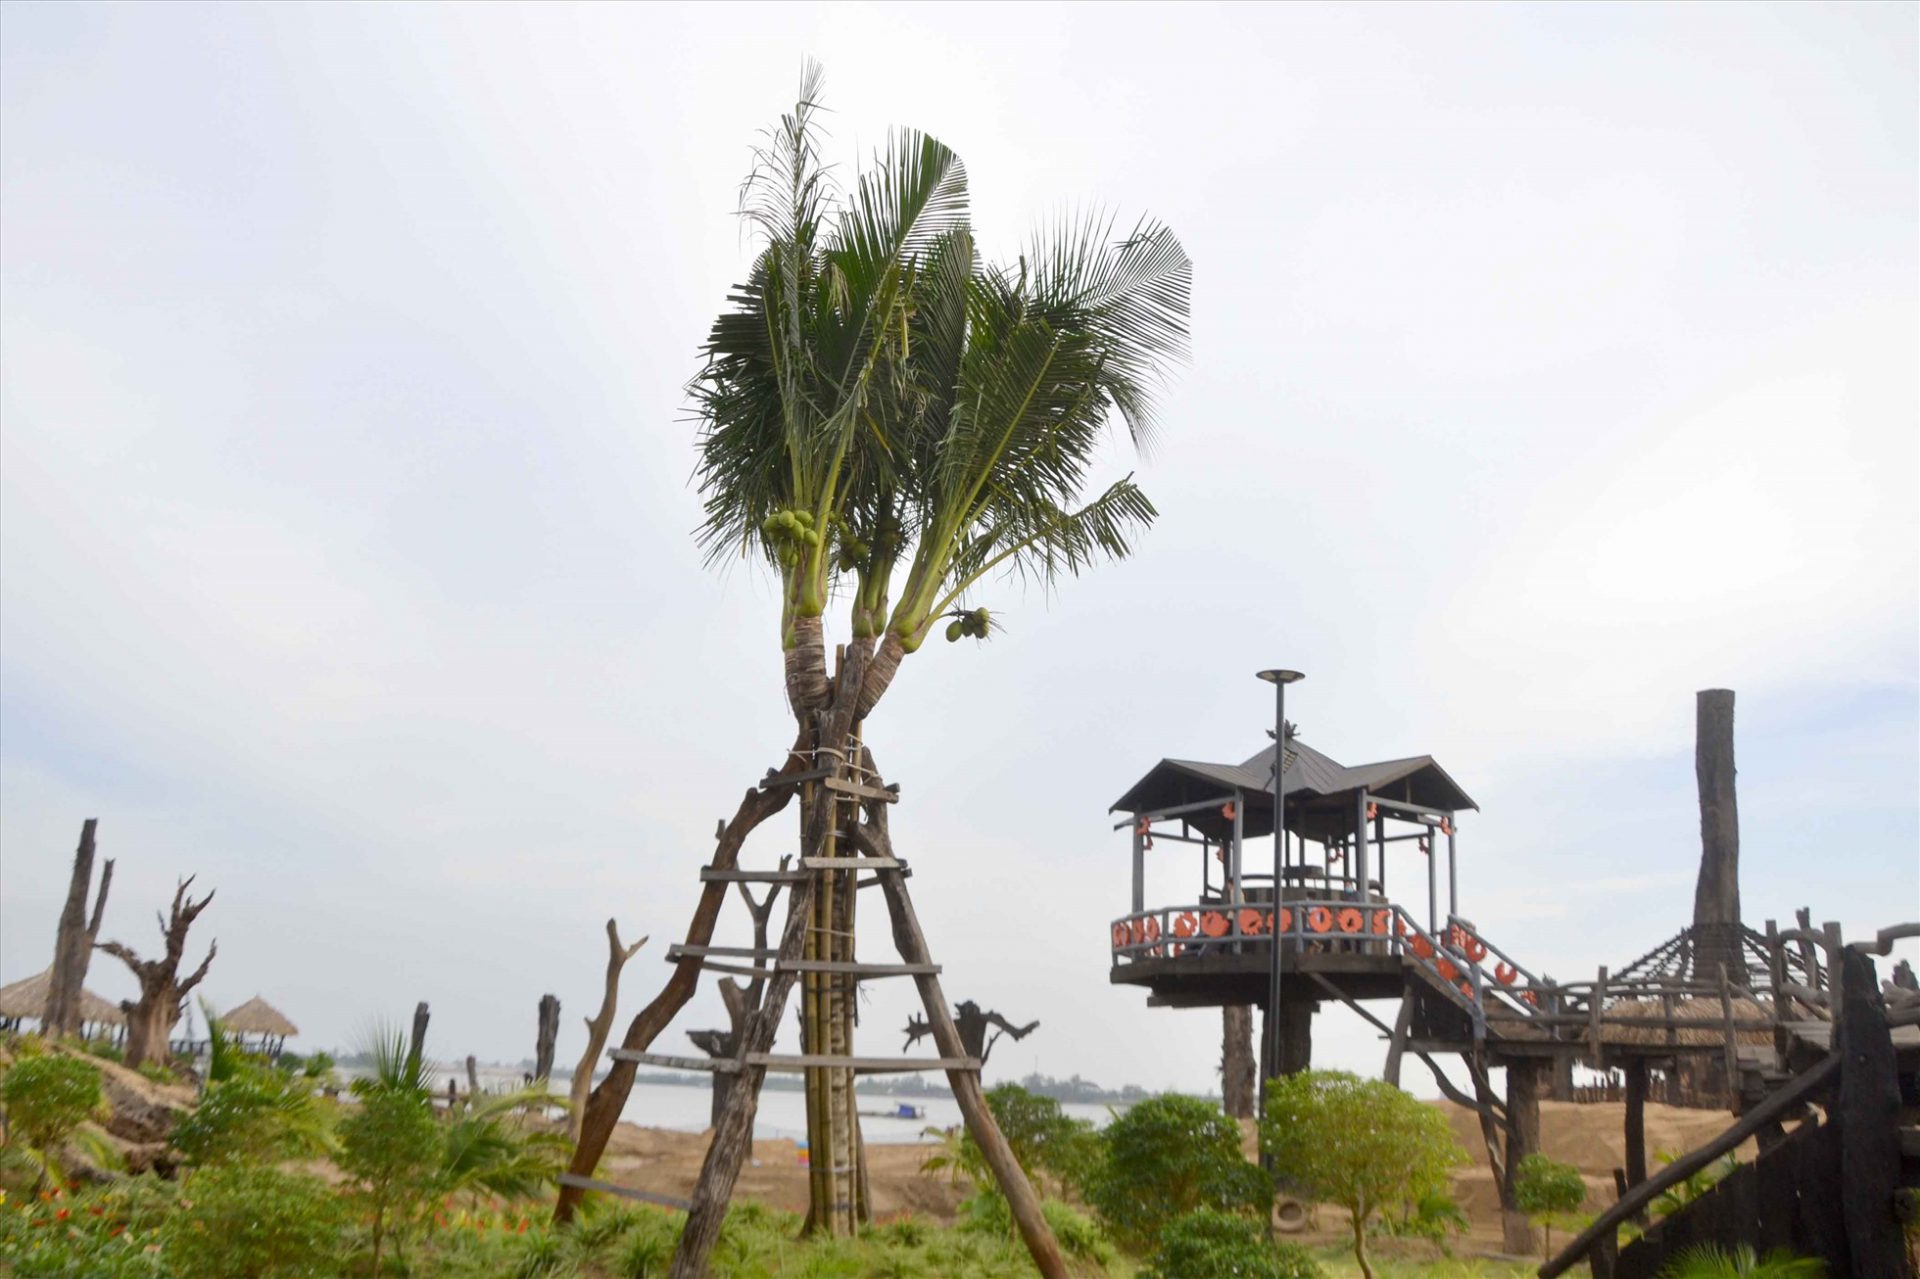 Cây dừa 1 thân 4 ngọn tại Khu du lịch sinh thái Cồn Én. Ảnh: Lâm Điền